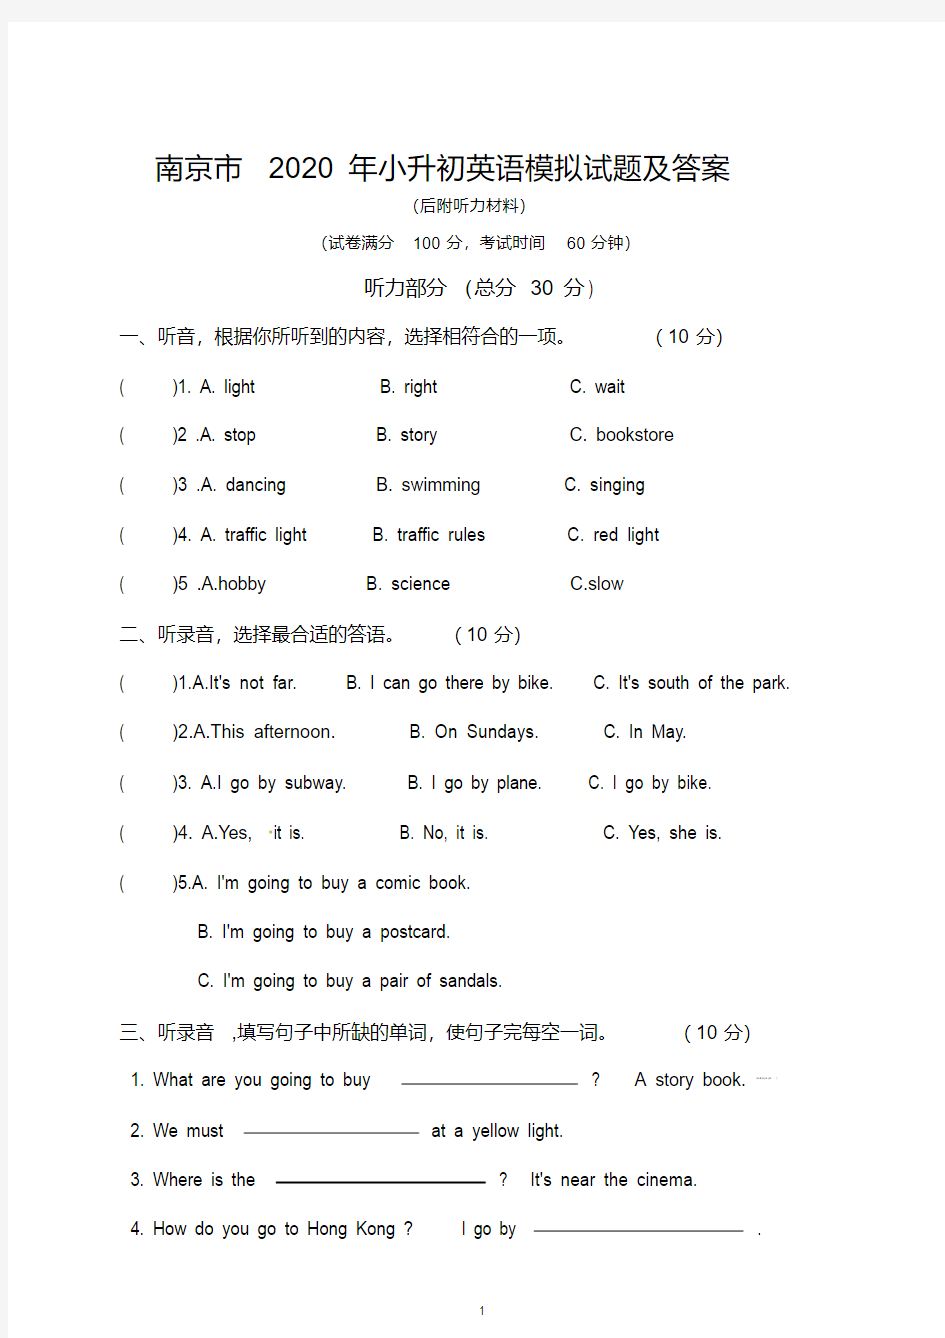 南京市2020年小升初英语模拟试题及答案(后附听力材料)(20200427145932)